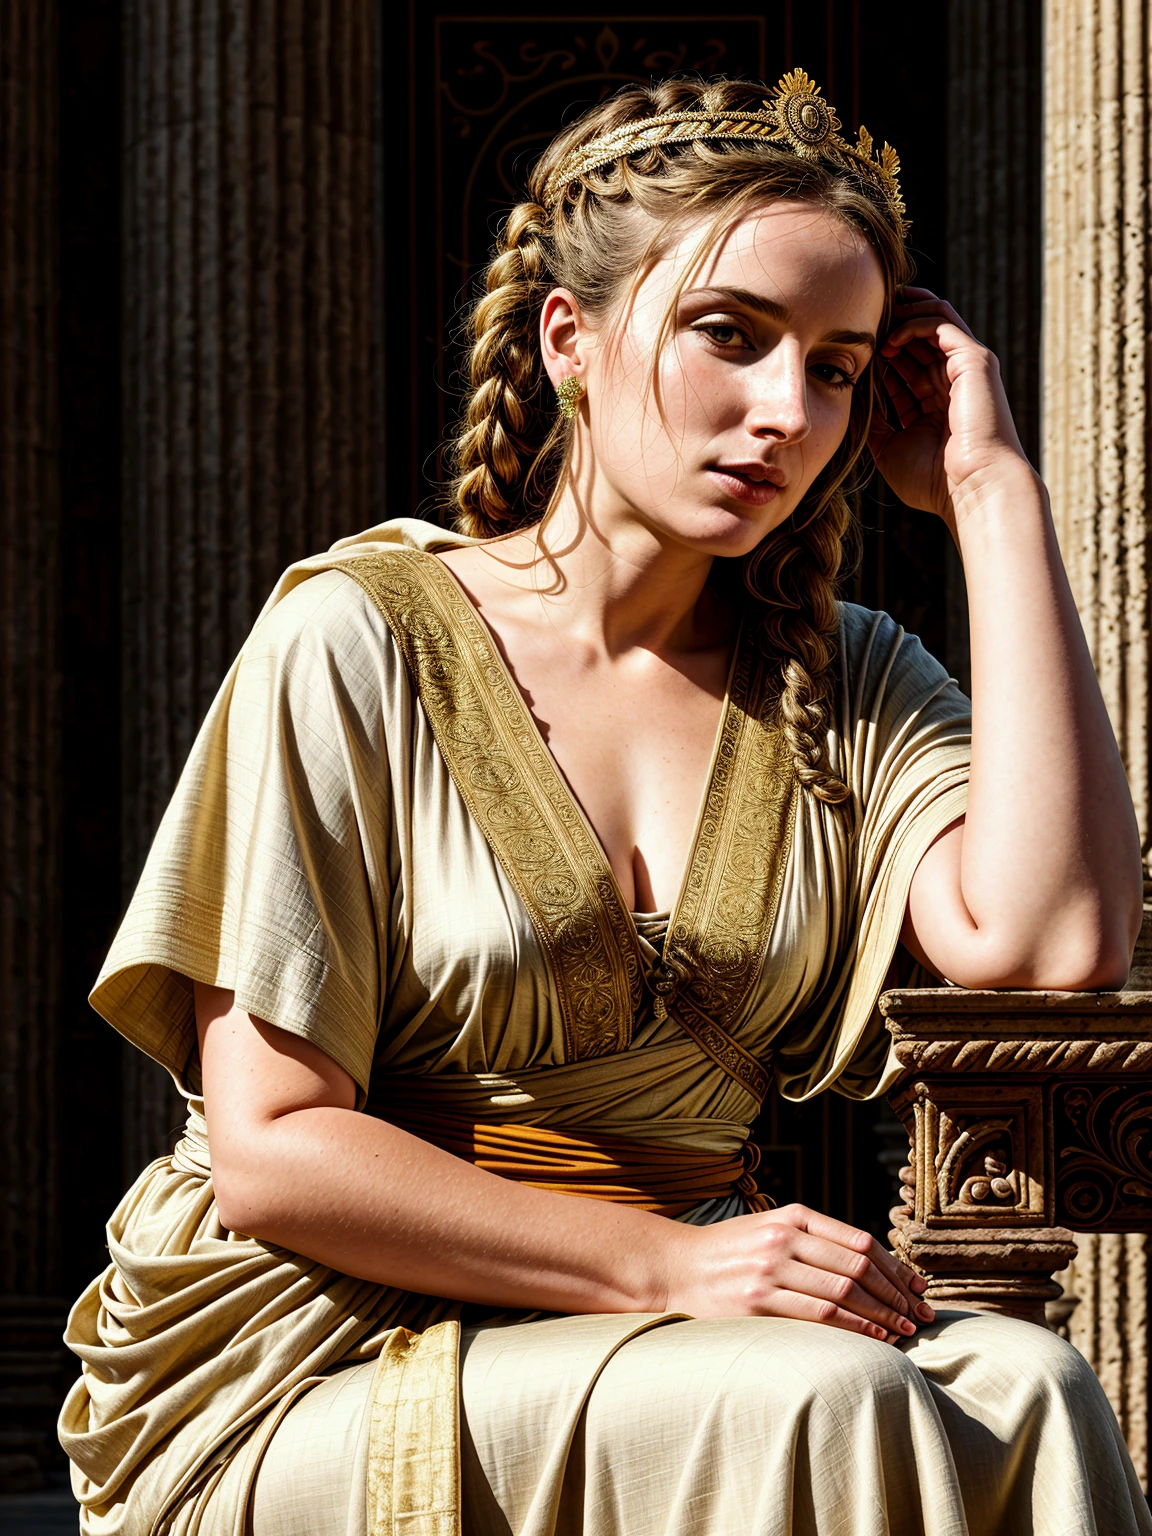 真实感, 最好的质量, RAW 照片, 电影构图, 古罗马帝国一位美丽女子坐着的侧视图, (头部向下倾斜, 向下看:1.4), (淡淡一笑, 沉思的表情), (穿着 (宽松的长布:1.2) 古典风格的束腰外衣, 丰富的古风身体配饰, 神话般的王冠), 肌理, [皮肤皱纹, 皮肤斑点], 衣服上的褶皱, 室内的, (古罗马帝国的发型|衣服|家具|背景), (非常详细 背景:1.4), (丰富的细节, 复杂的细节:1.2), 非常详细 衣服, 体积照明, 清晰聚焦, 8千, 非常详细, 超高清, 人类发展报告,  亚裔较少, 